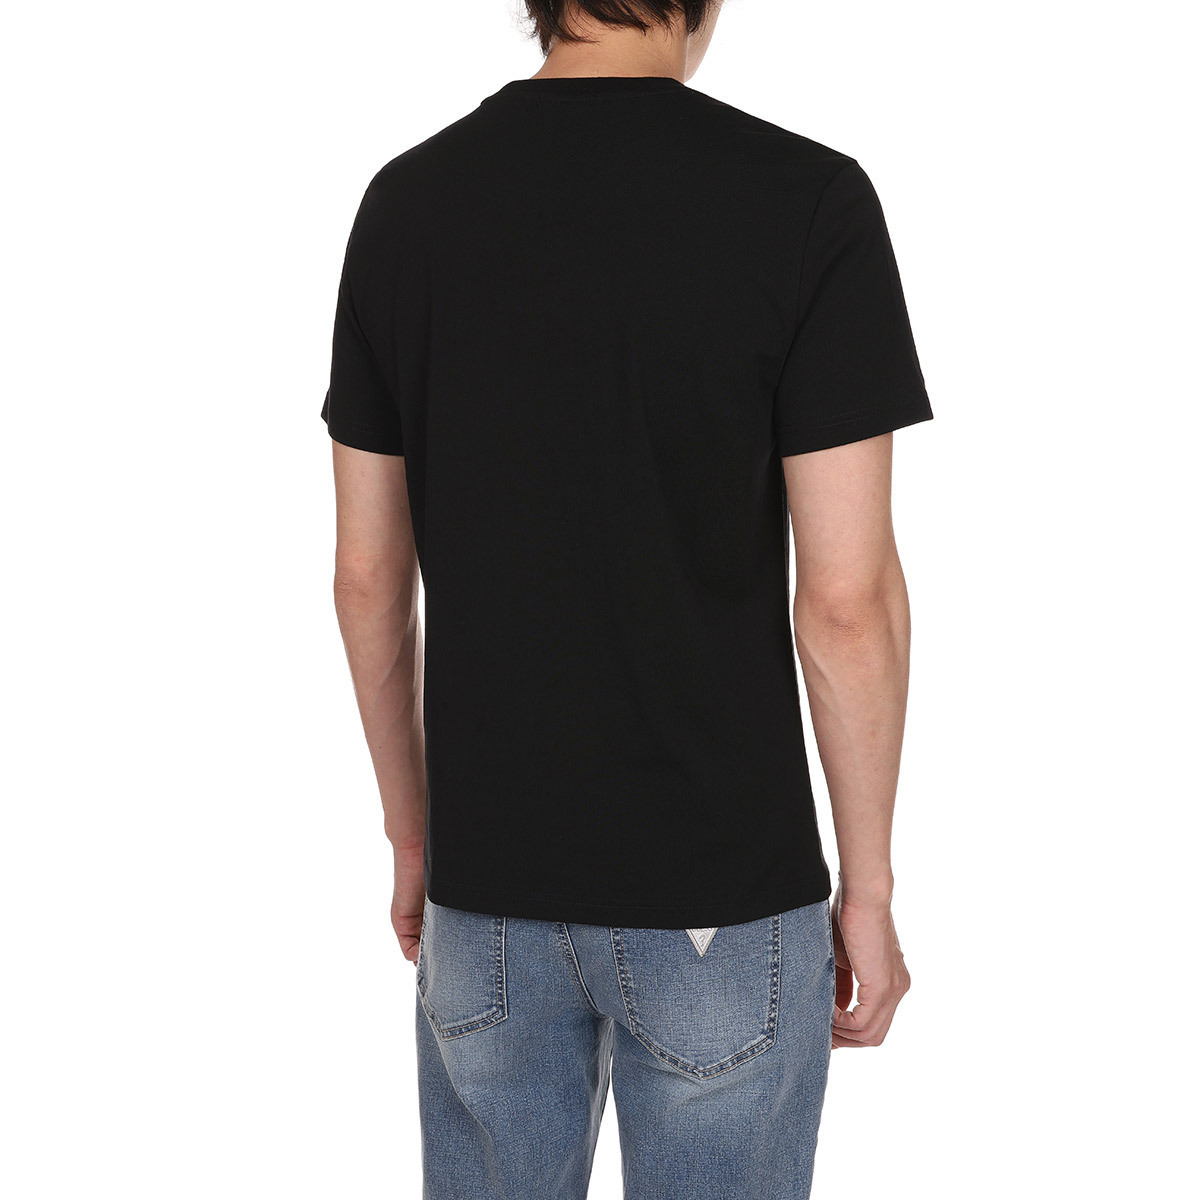 게스 남성 반소매 티셔츠 - 블랙